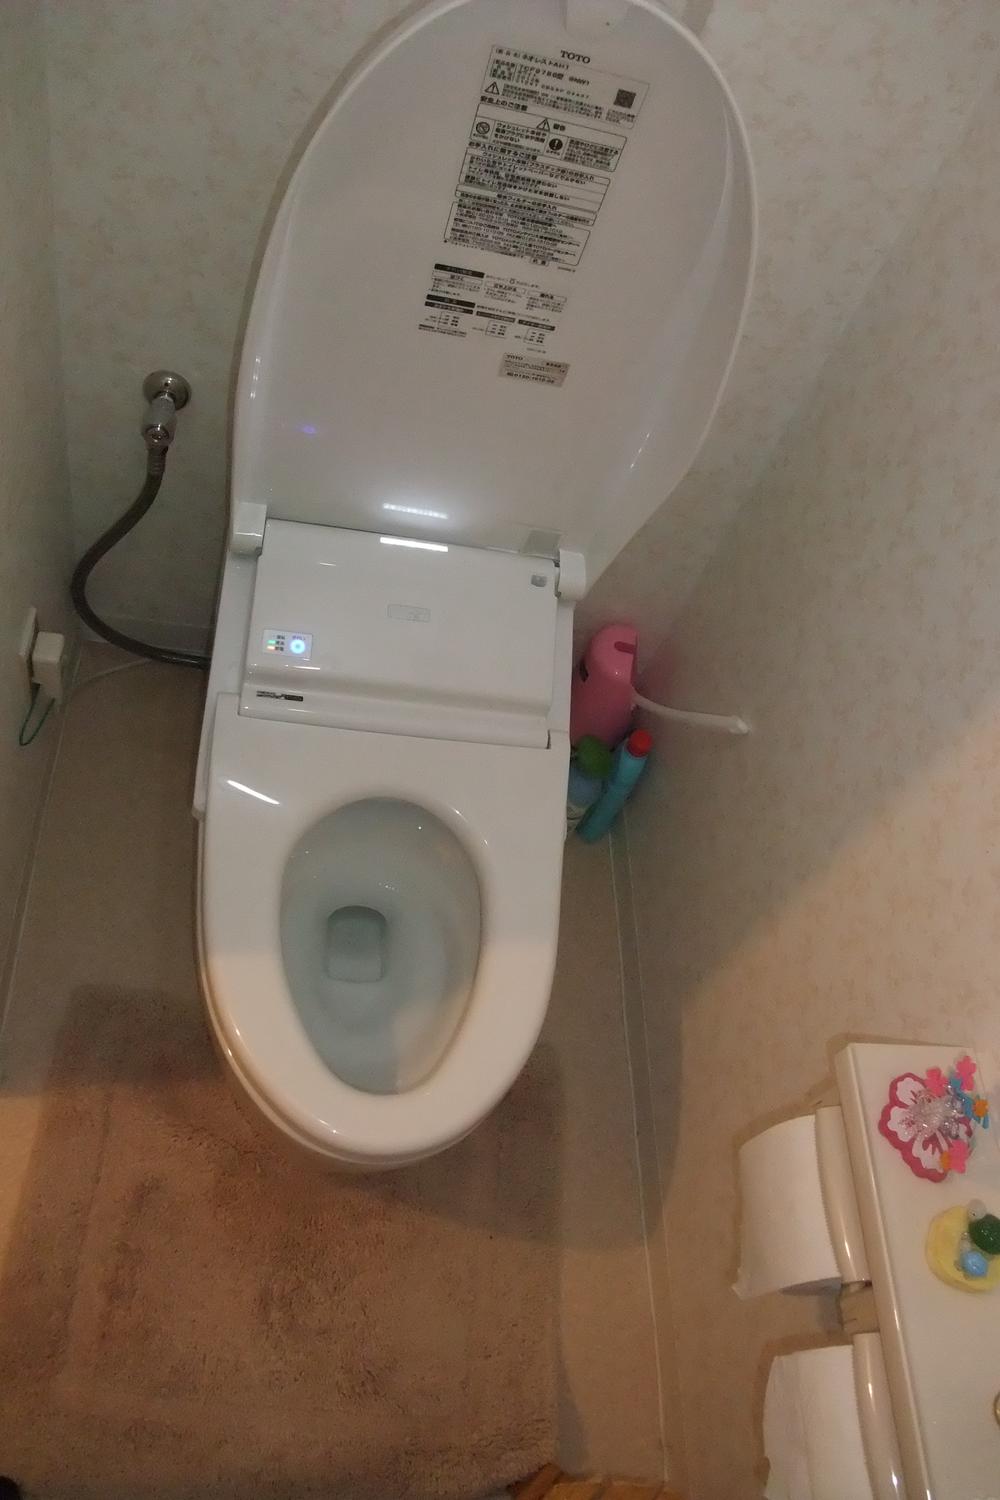 Toilet. Toilet replacement already